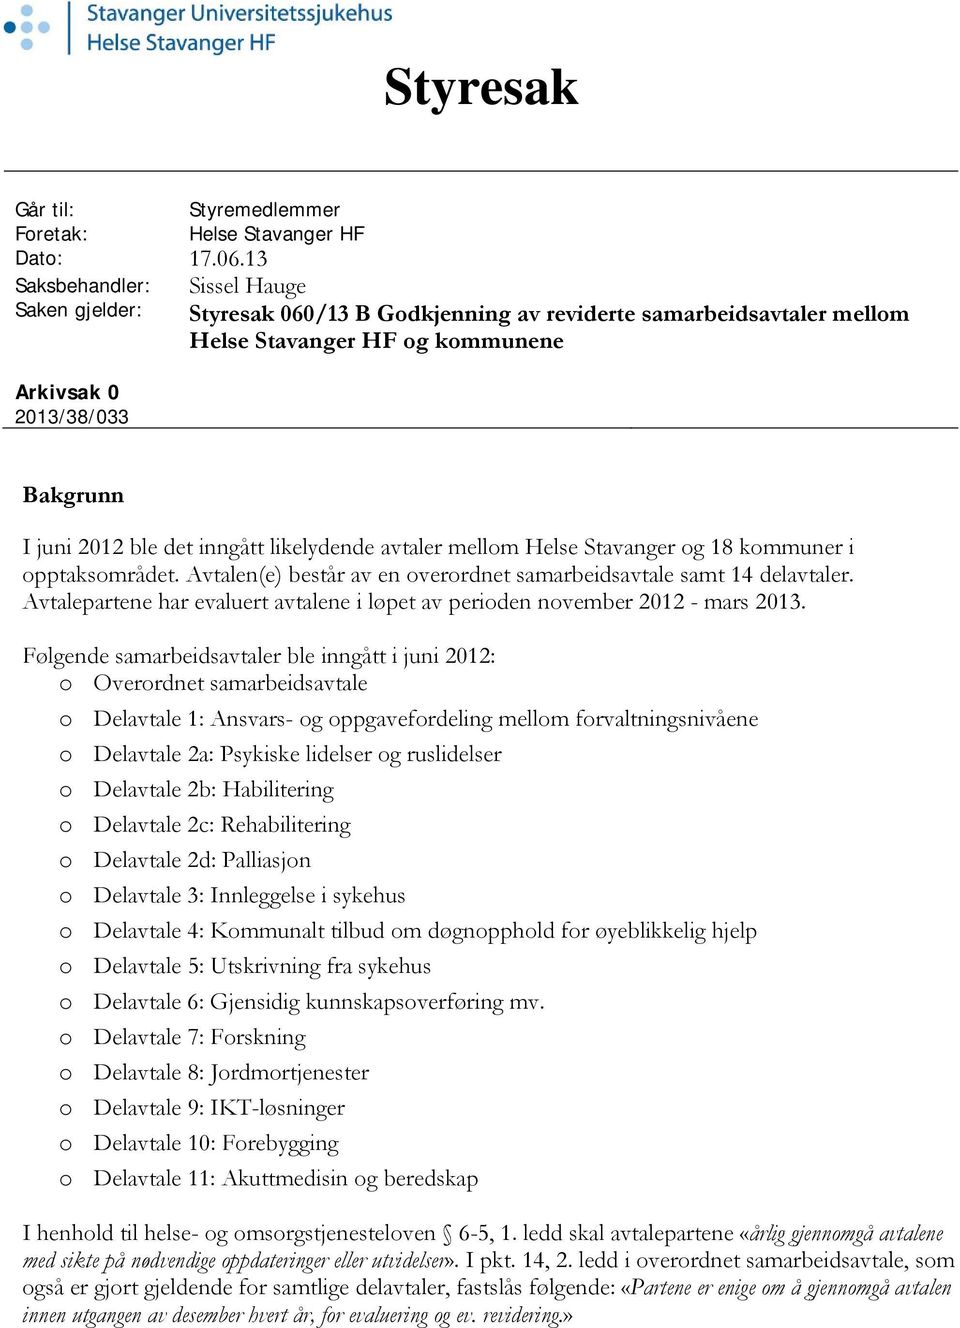 inngått likelydende avtaler mellom Helse Stavanger og 18 kommuner i opptaksområdet. Avtalen(e) består av en overordnet samarbeidsavtale samt 14 delavtaler.